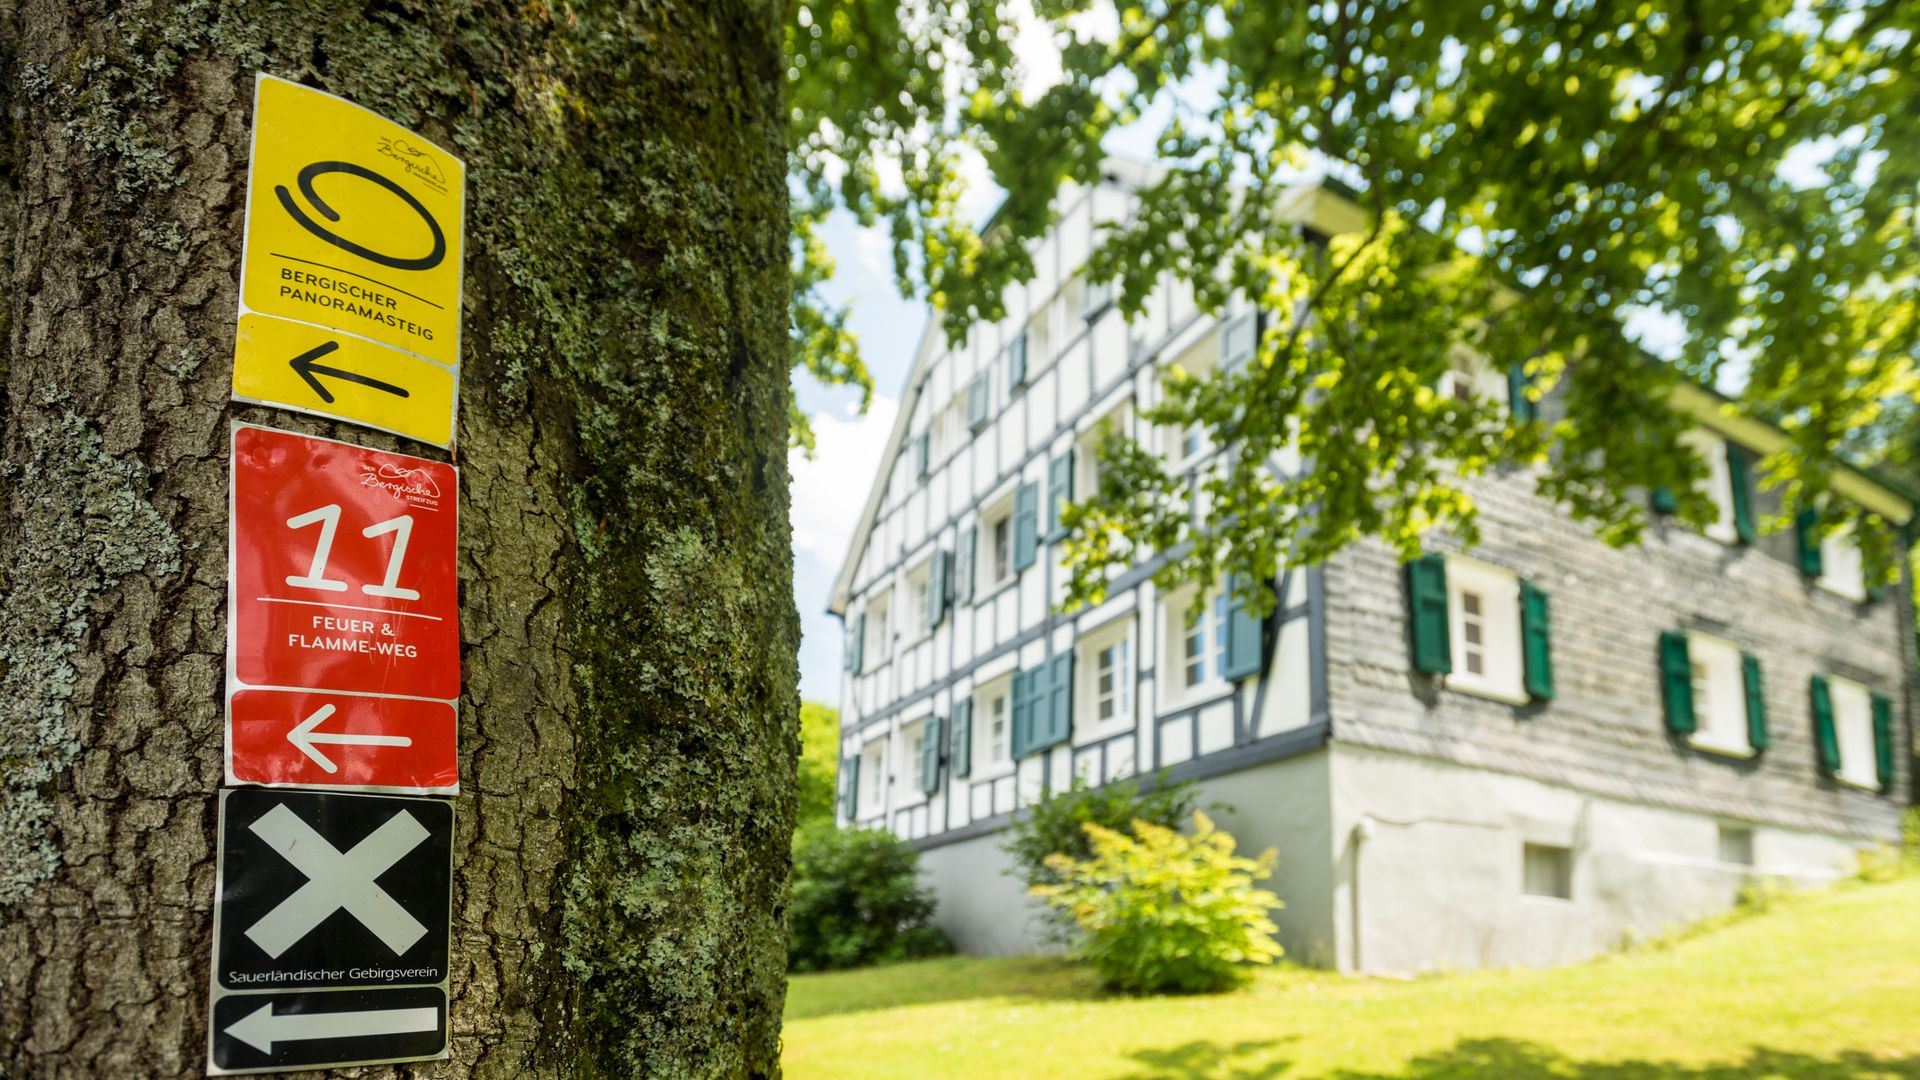 An einem dicken Baumstamm sind drei Wegezeichen angebracht, ein gelbes vom Bergischen Panoramasteig, ein rotes vom Bergischen Streifzug Feuer- und Flamme-Weg und ein schwarzes vom Sauerländischen Gebirgsverein. Im Hintergrund steht ein Fachwerkhaus.